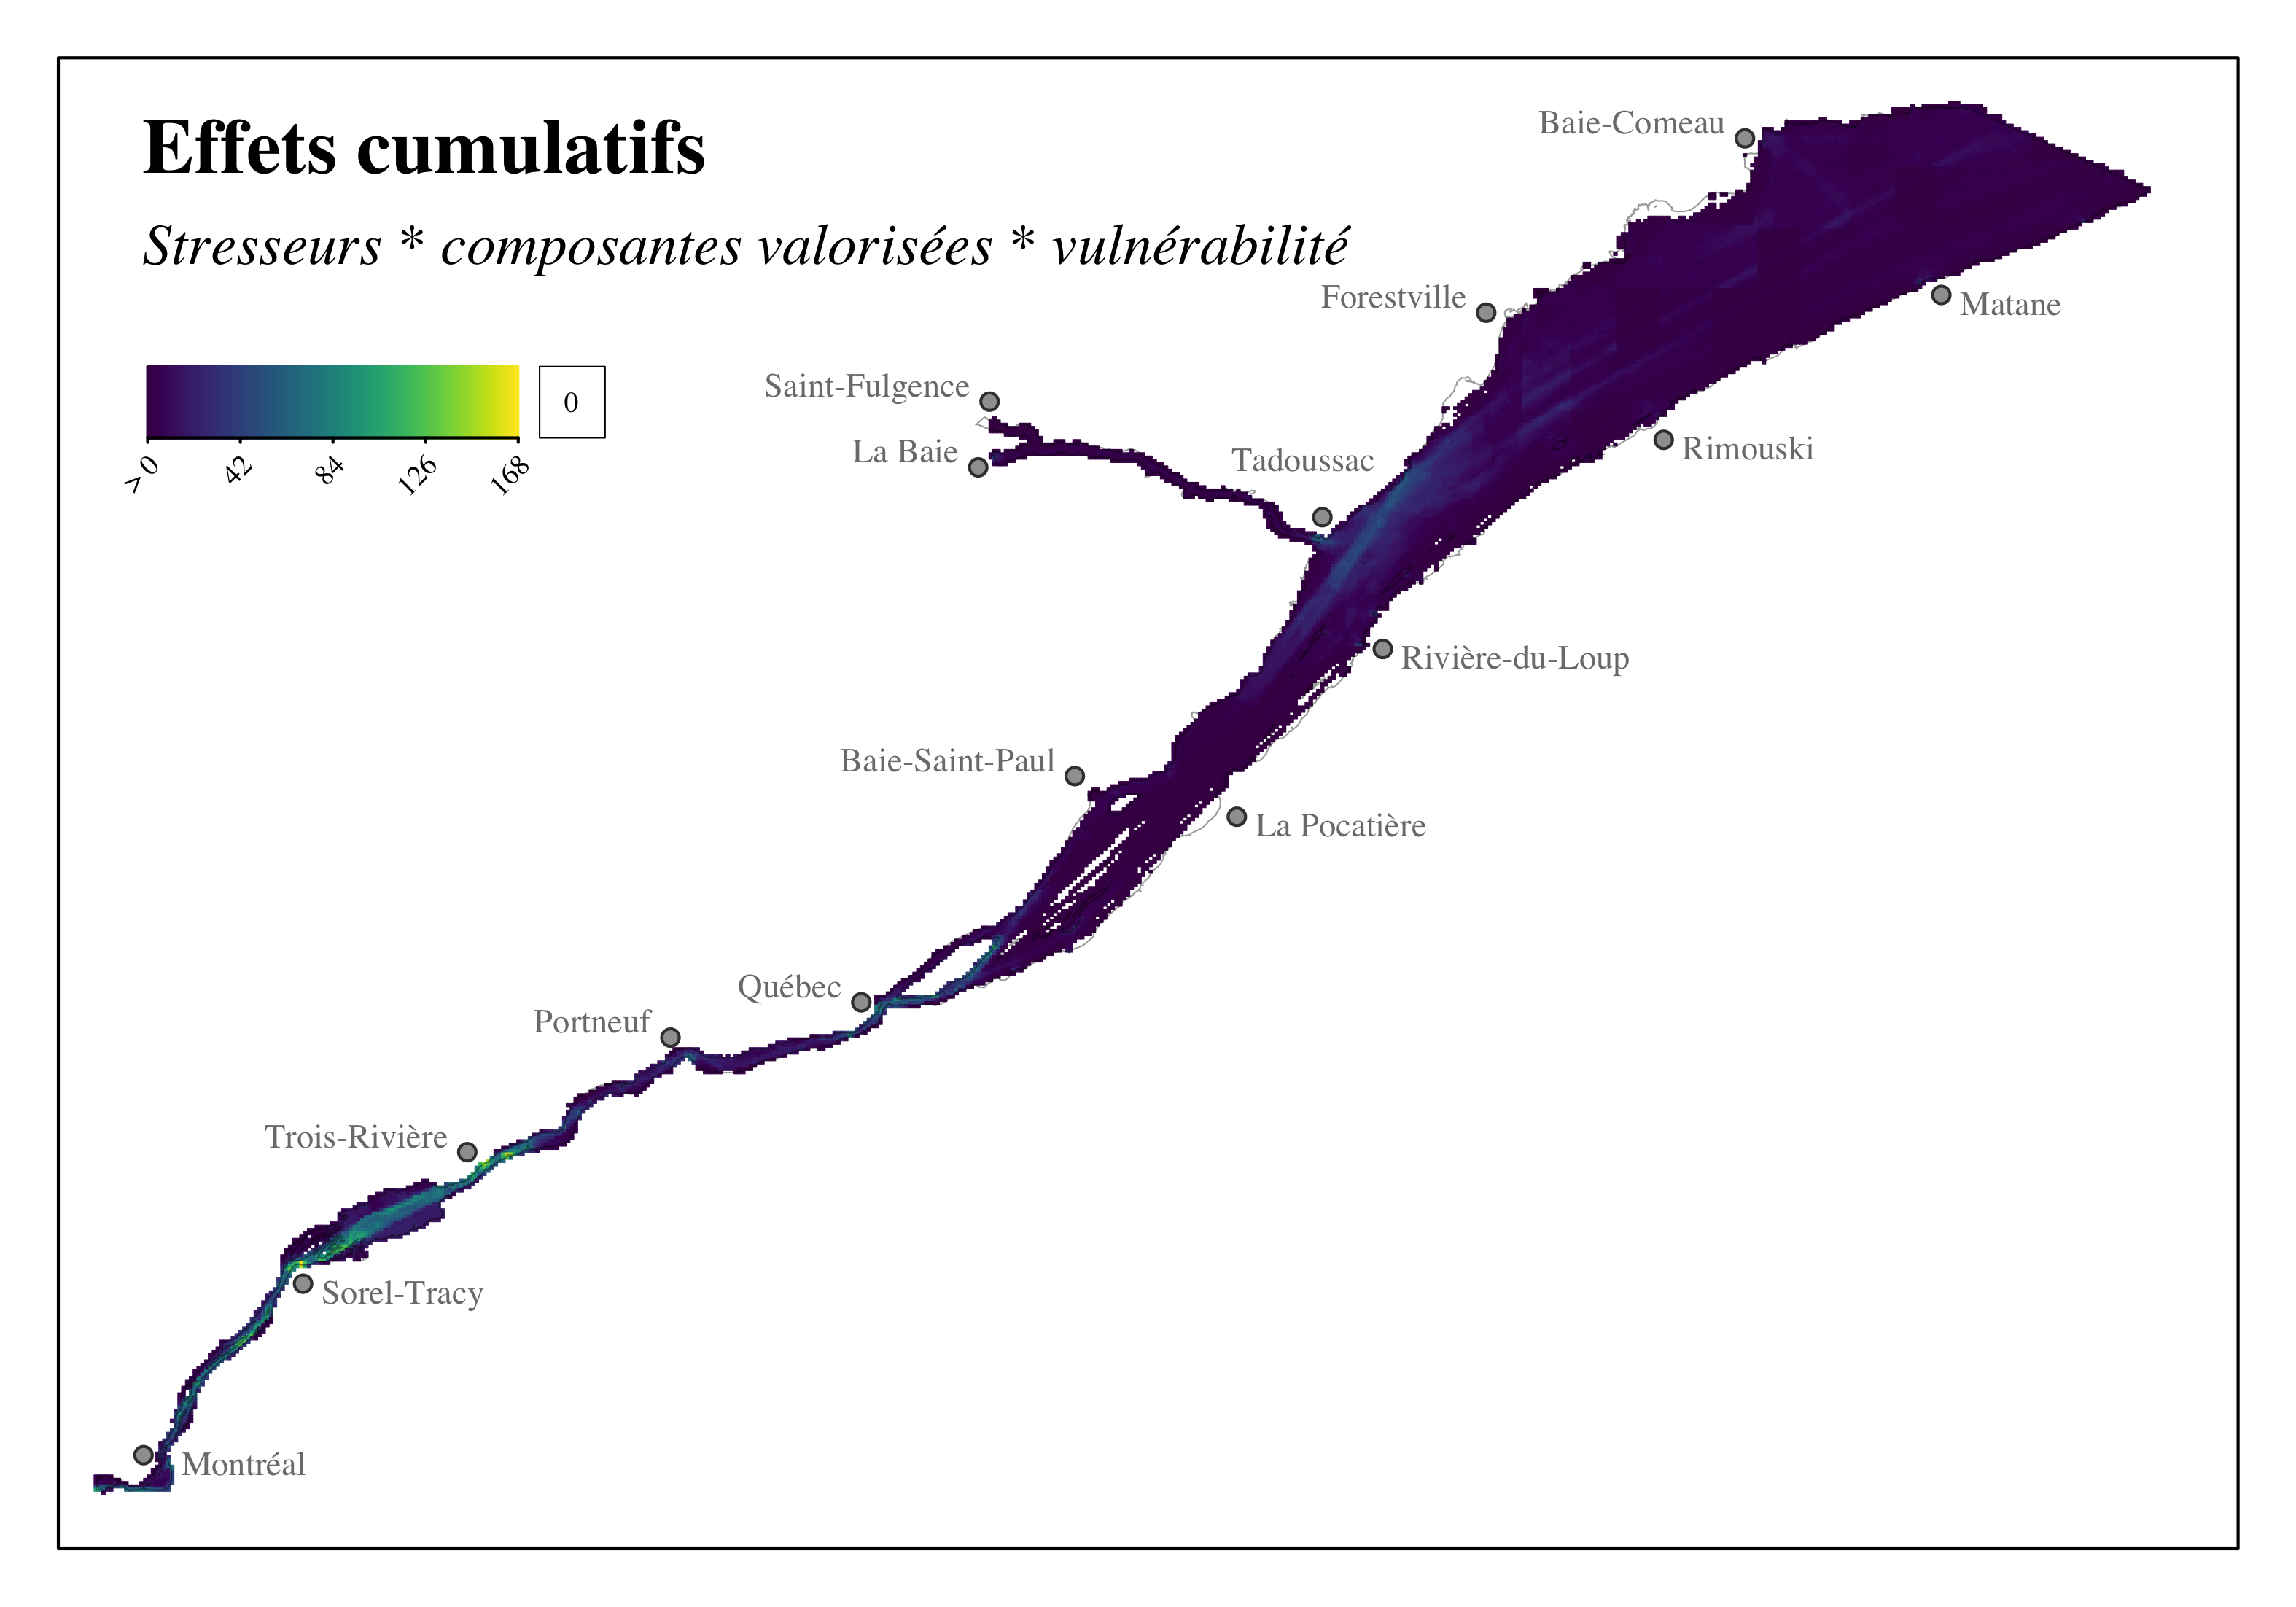 Distribution des effets cumulatifs des sources de stress reliés aux activités maritimes sur les composantes valorisée